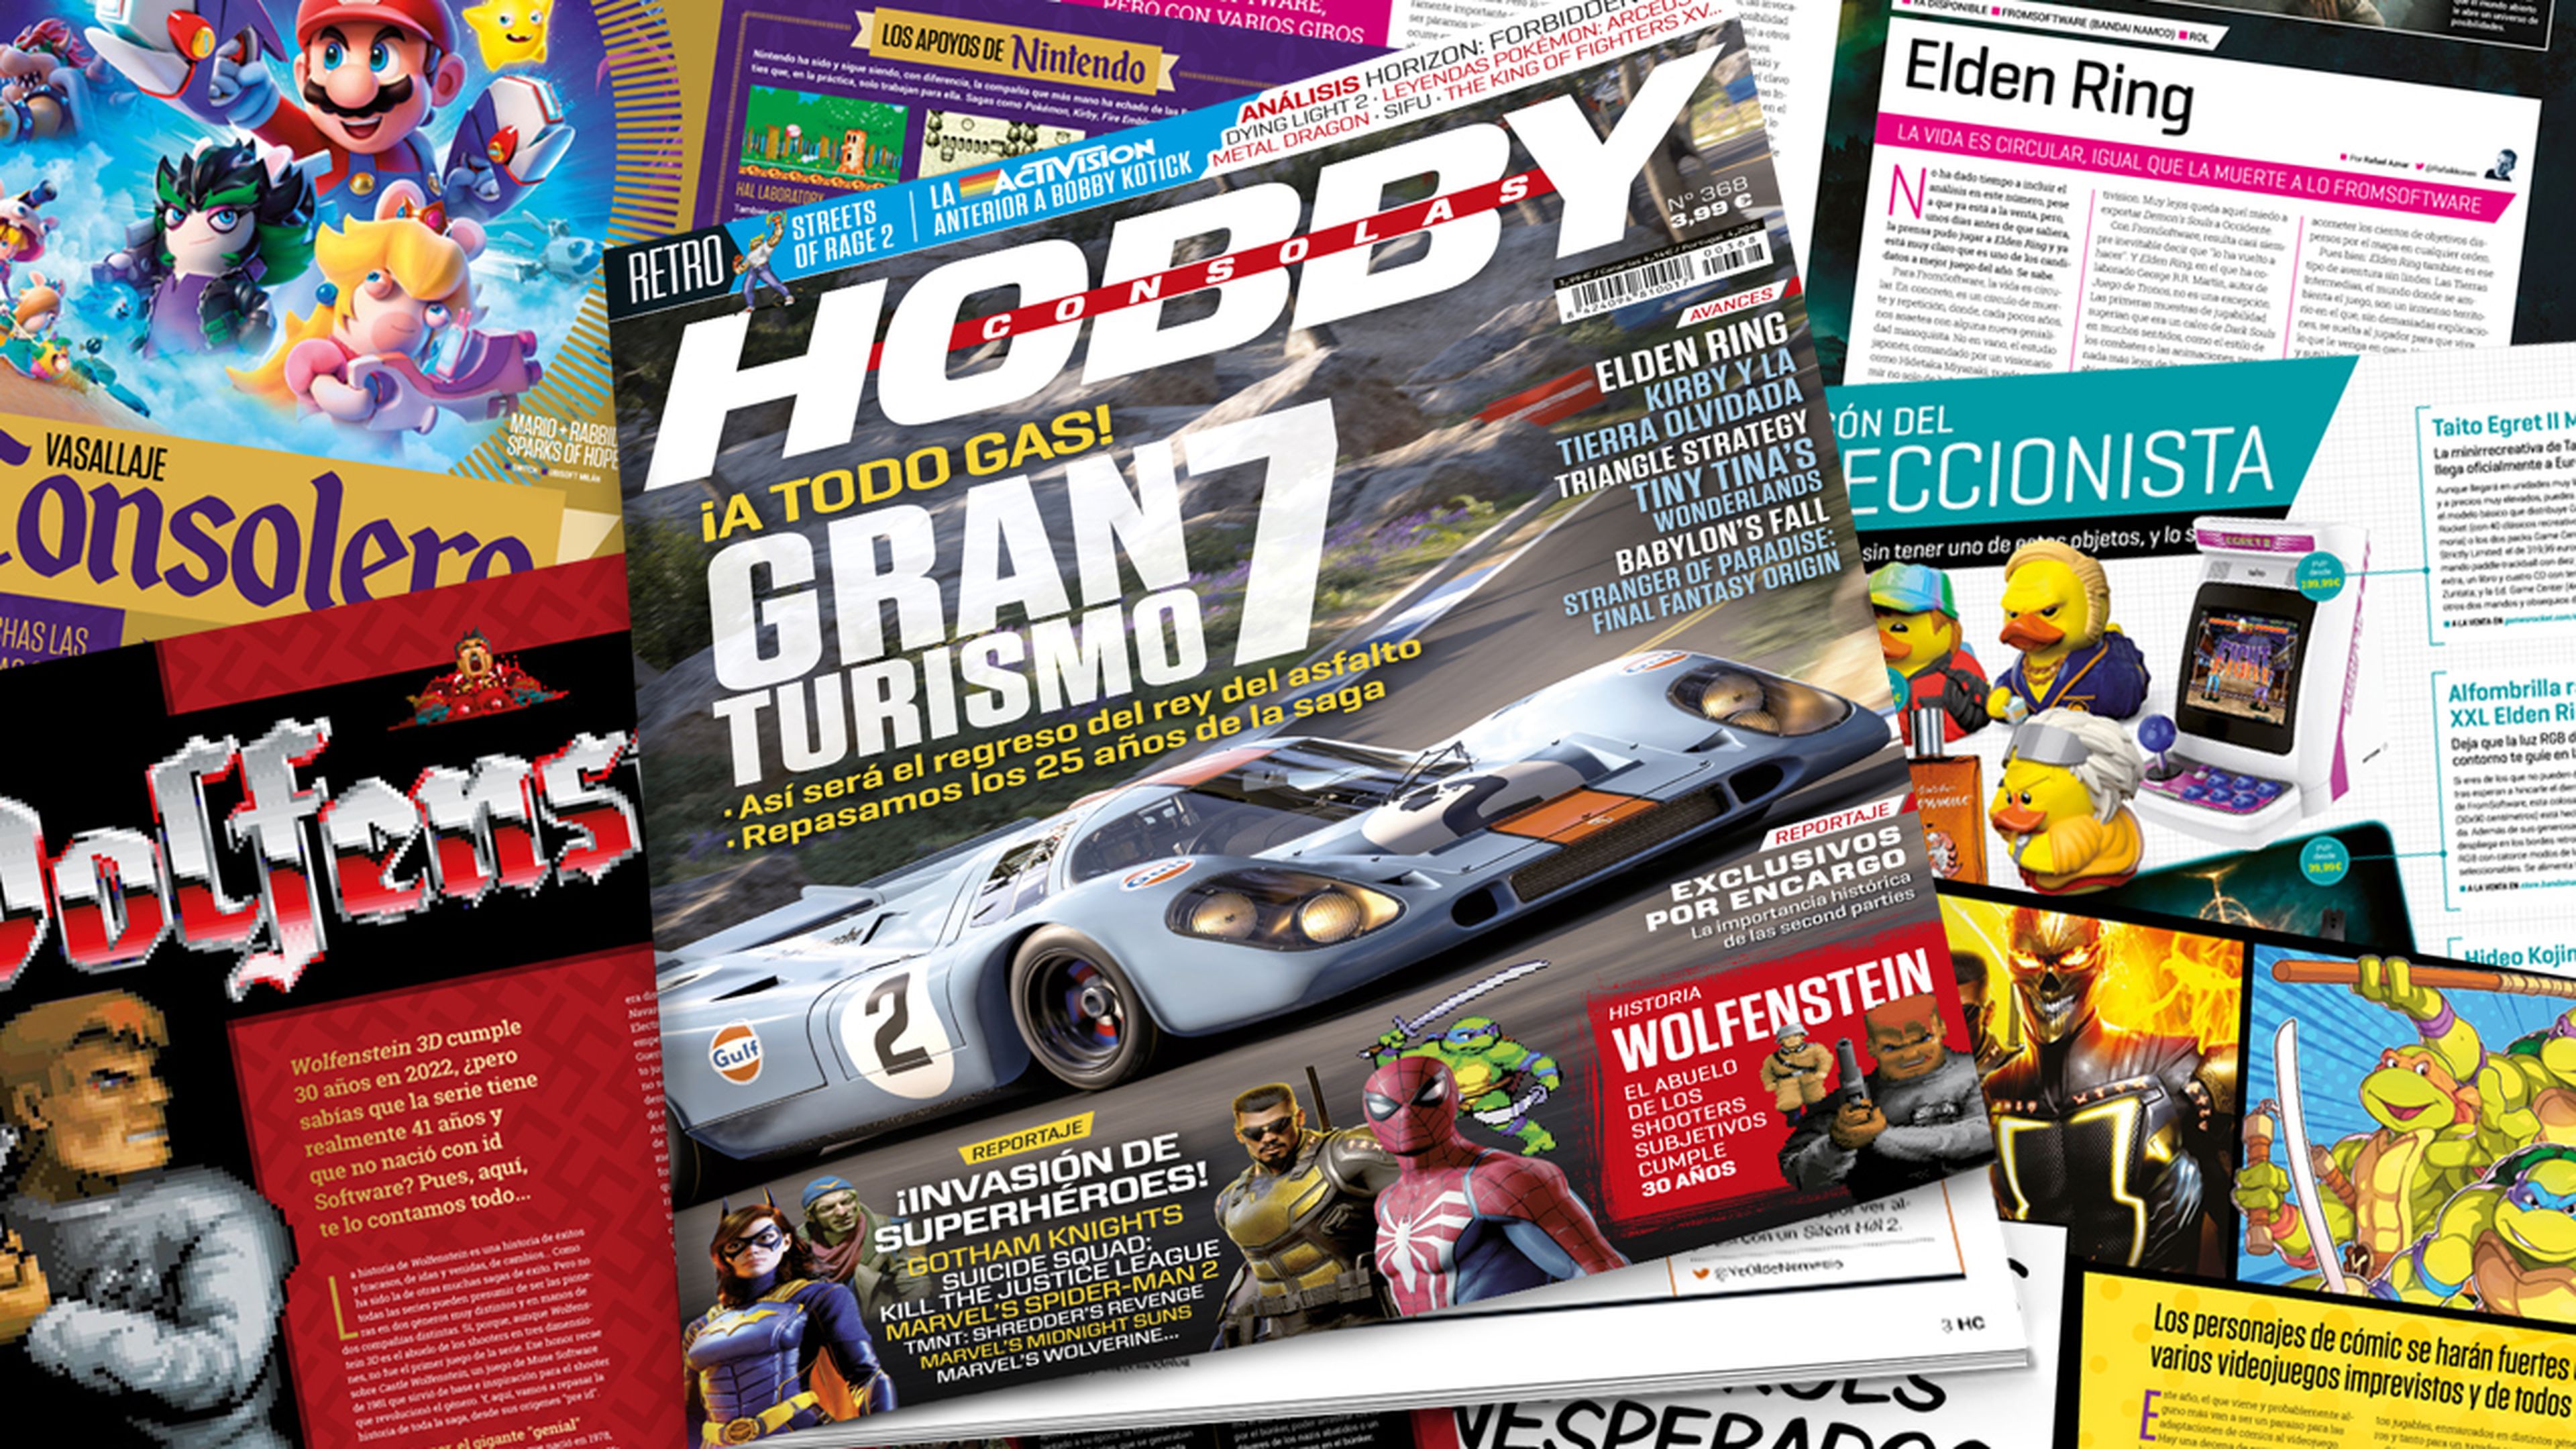 Hobby Consolas 368, a la venta con Gran Turismo 7 en portada